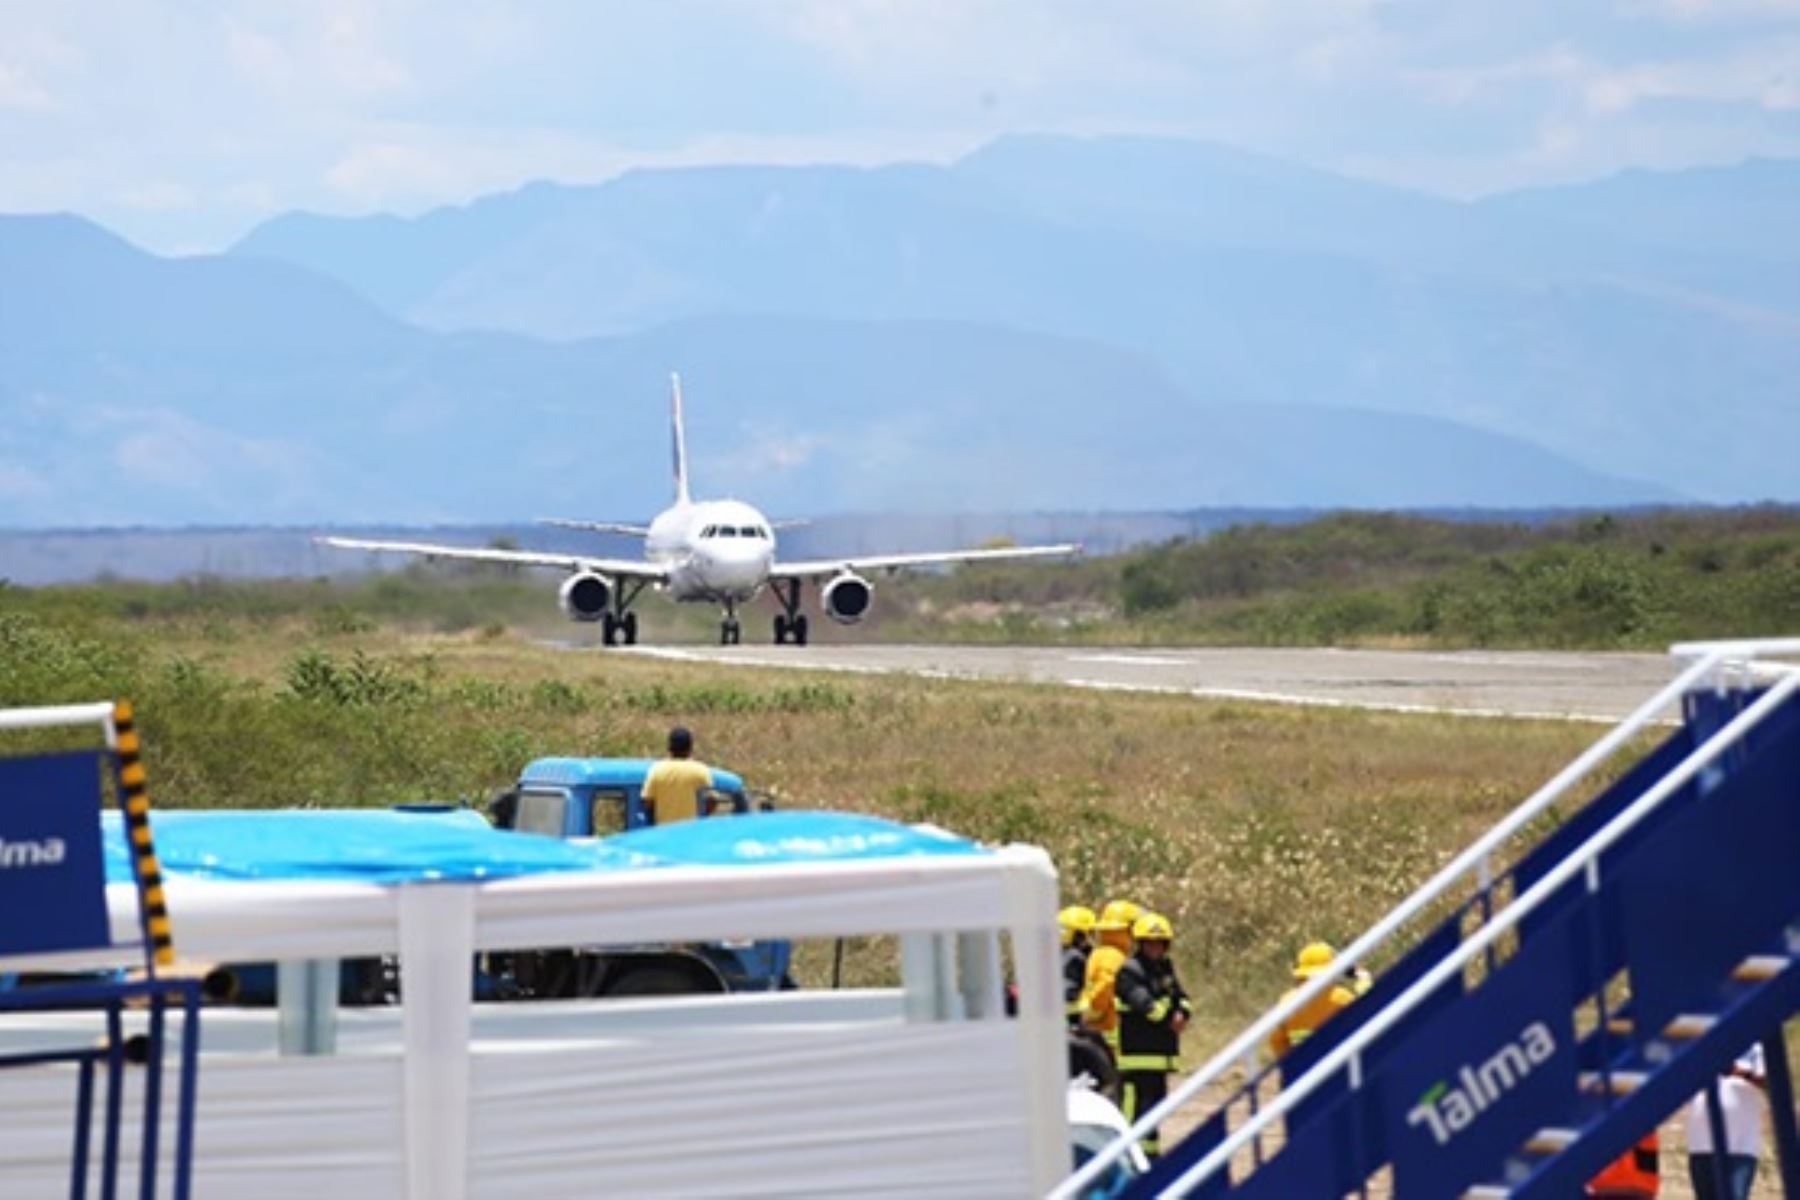 Aeropuerto de Jaén empezará a recibir otra vez vuelos comerciales desde Lima en las próximas semanas, anunció el ministro de Transportes y Comunicaciones, Raú Pérez Reyes.Foto: Cortesía.